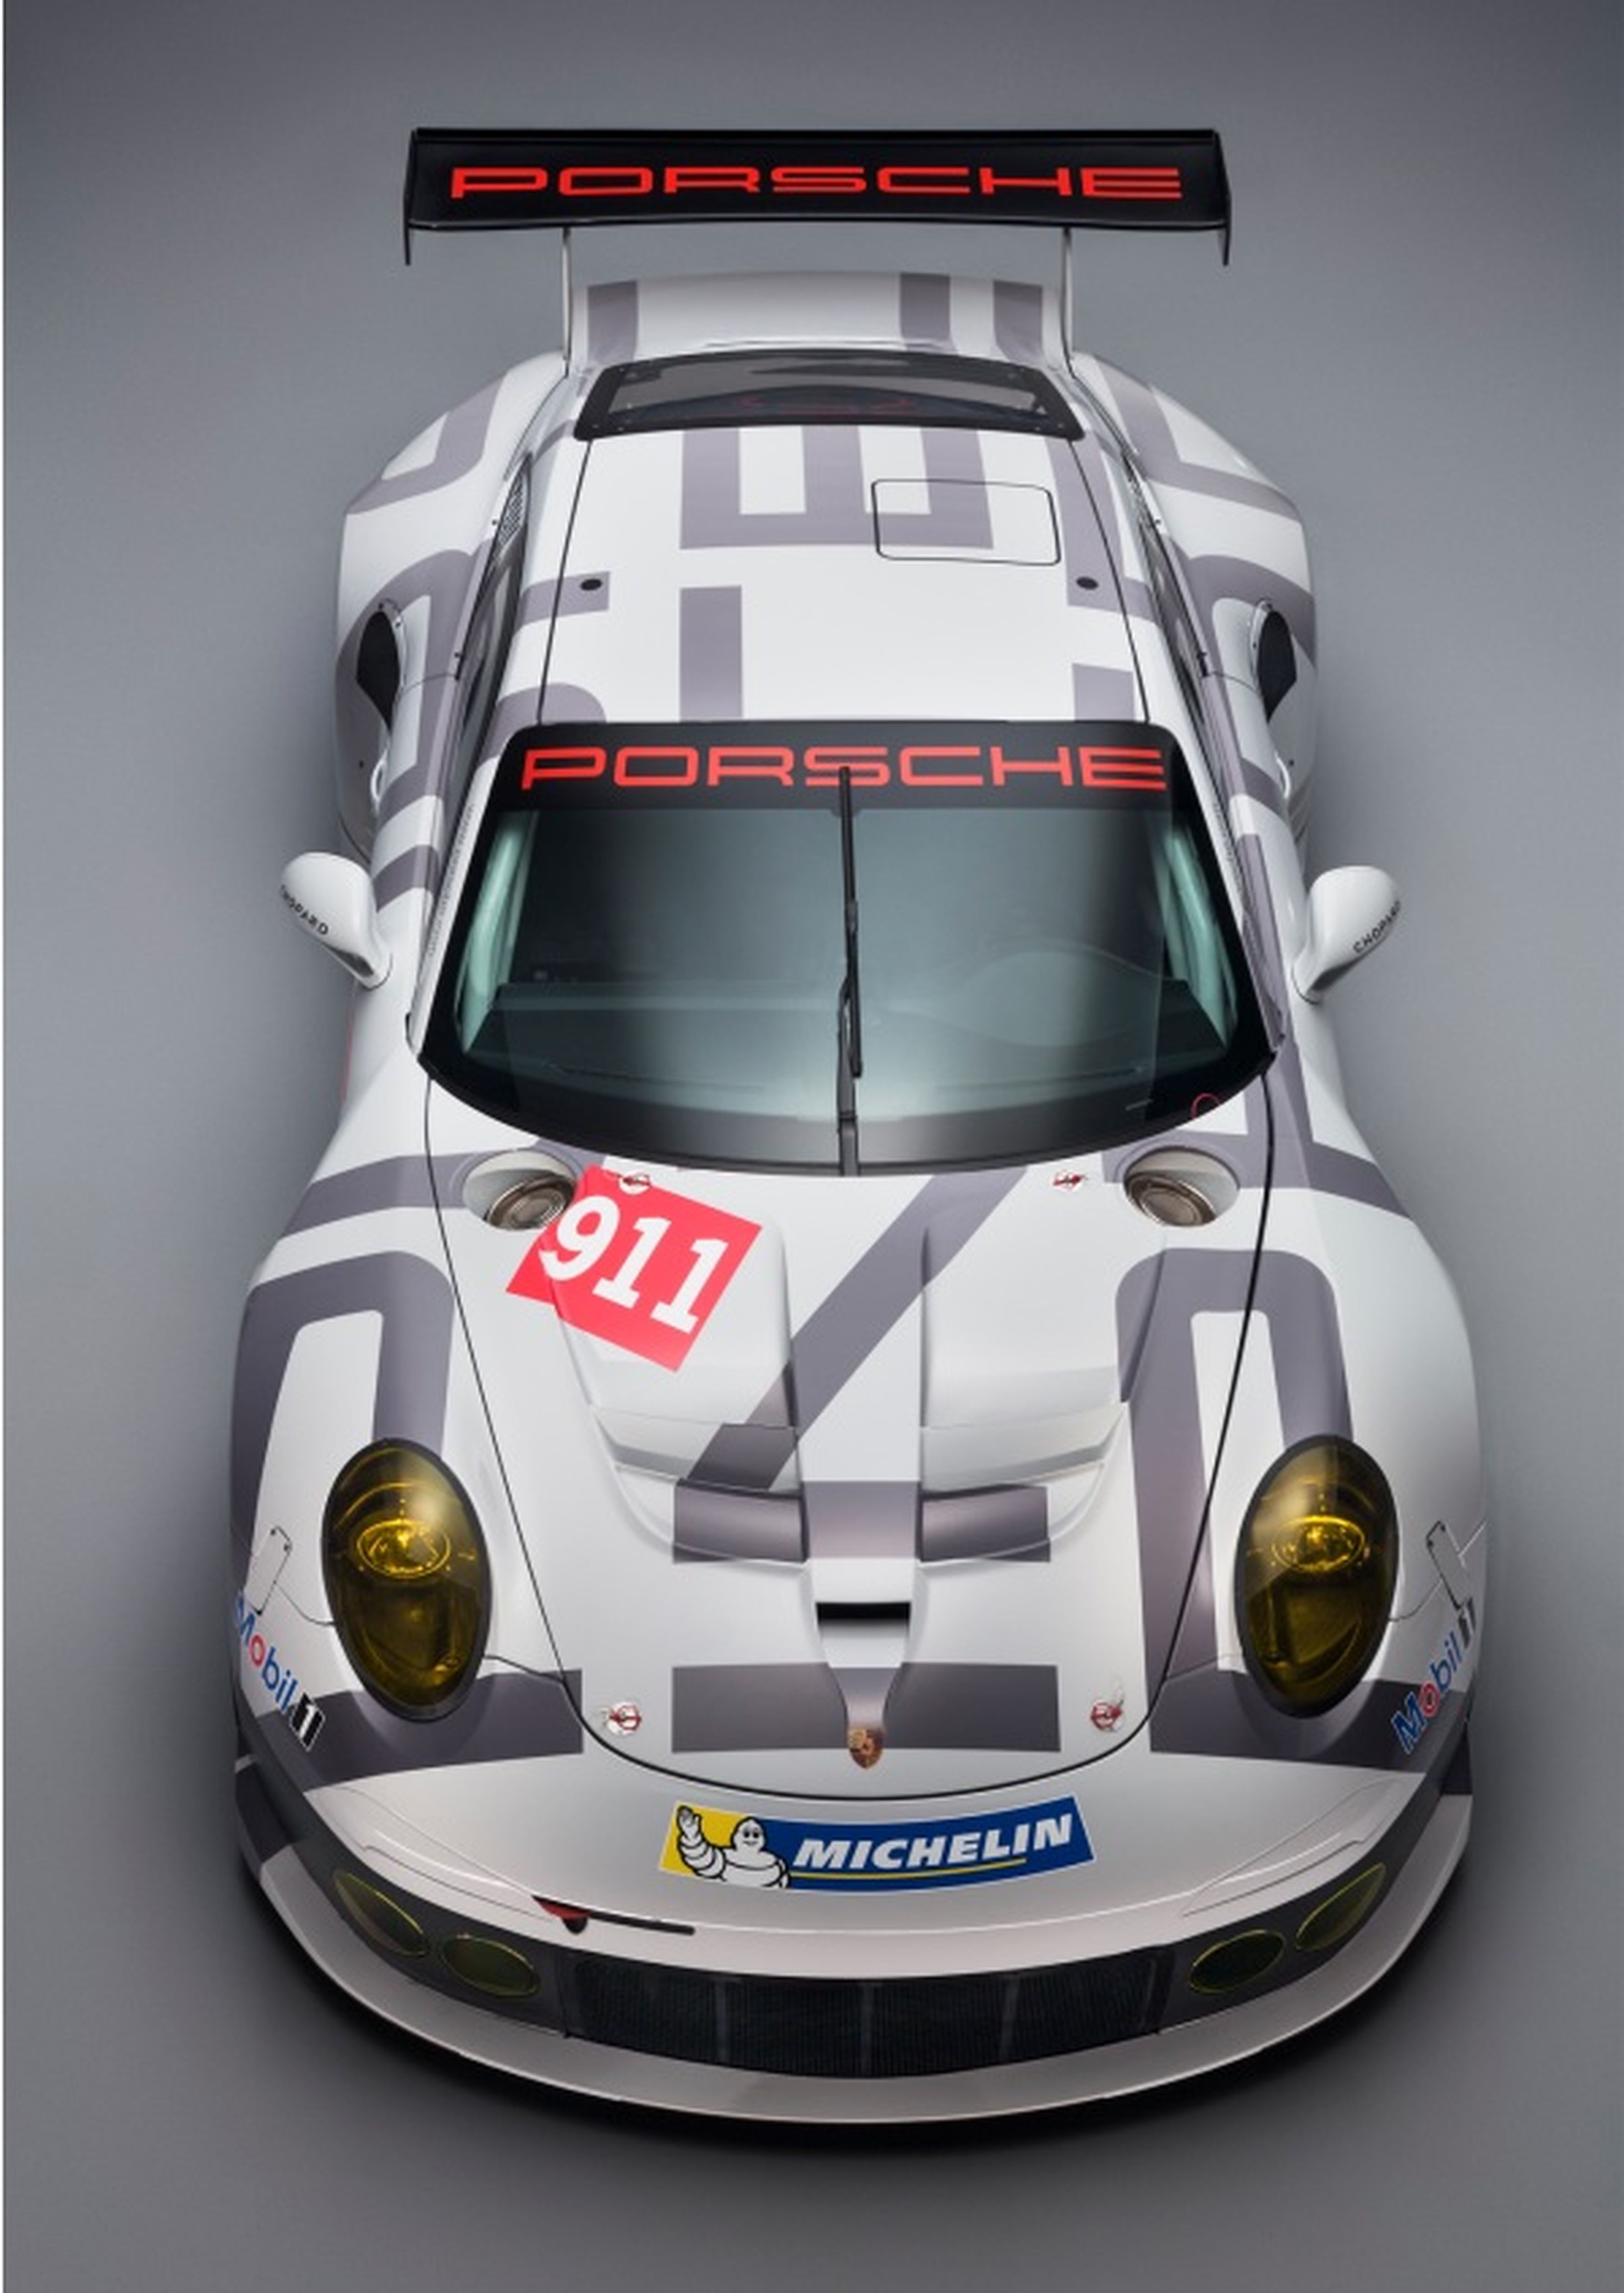 Porsche 911 RSR Le Mans techo